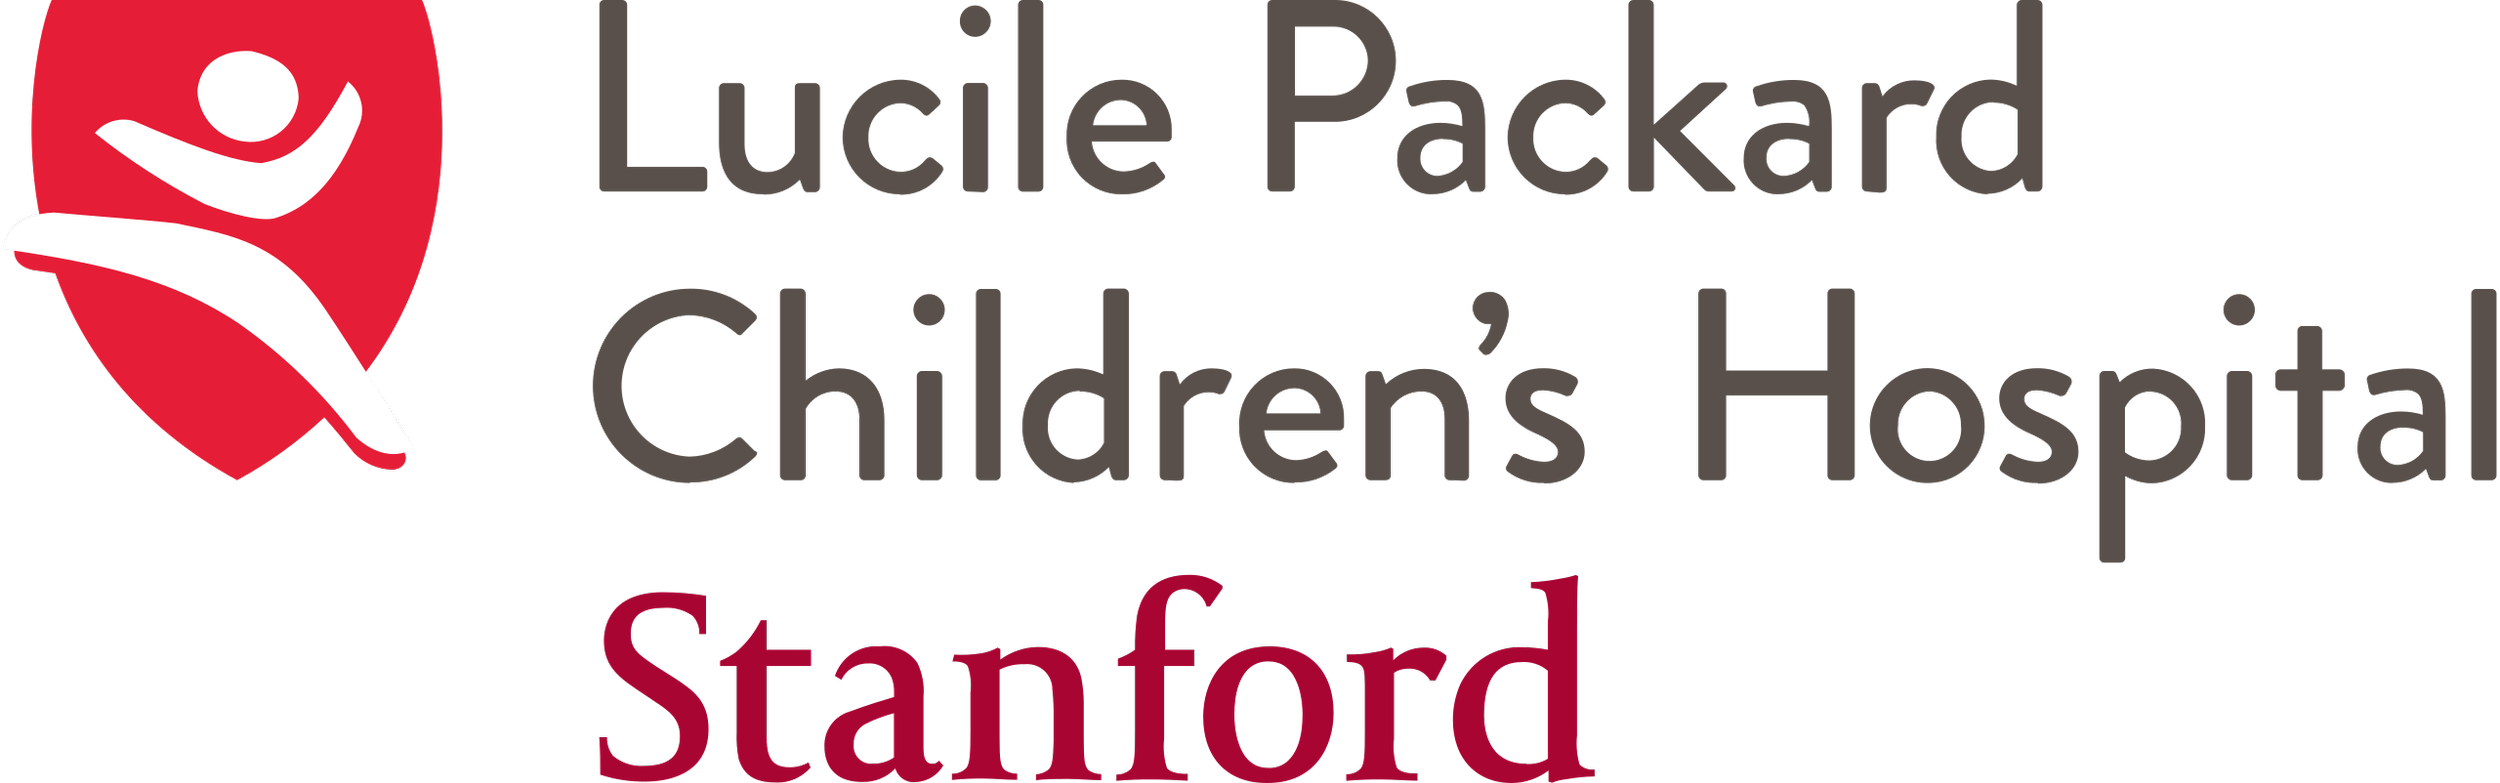 2560px-Lucile_Packard_Children's_Hospital_logo.svg.png